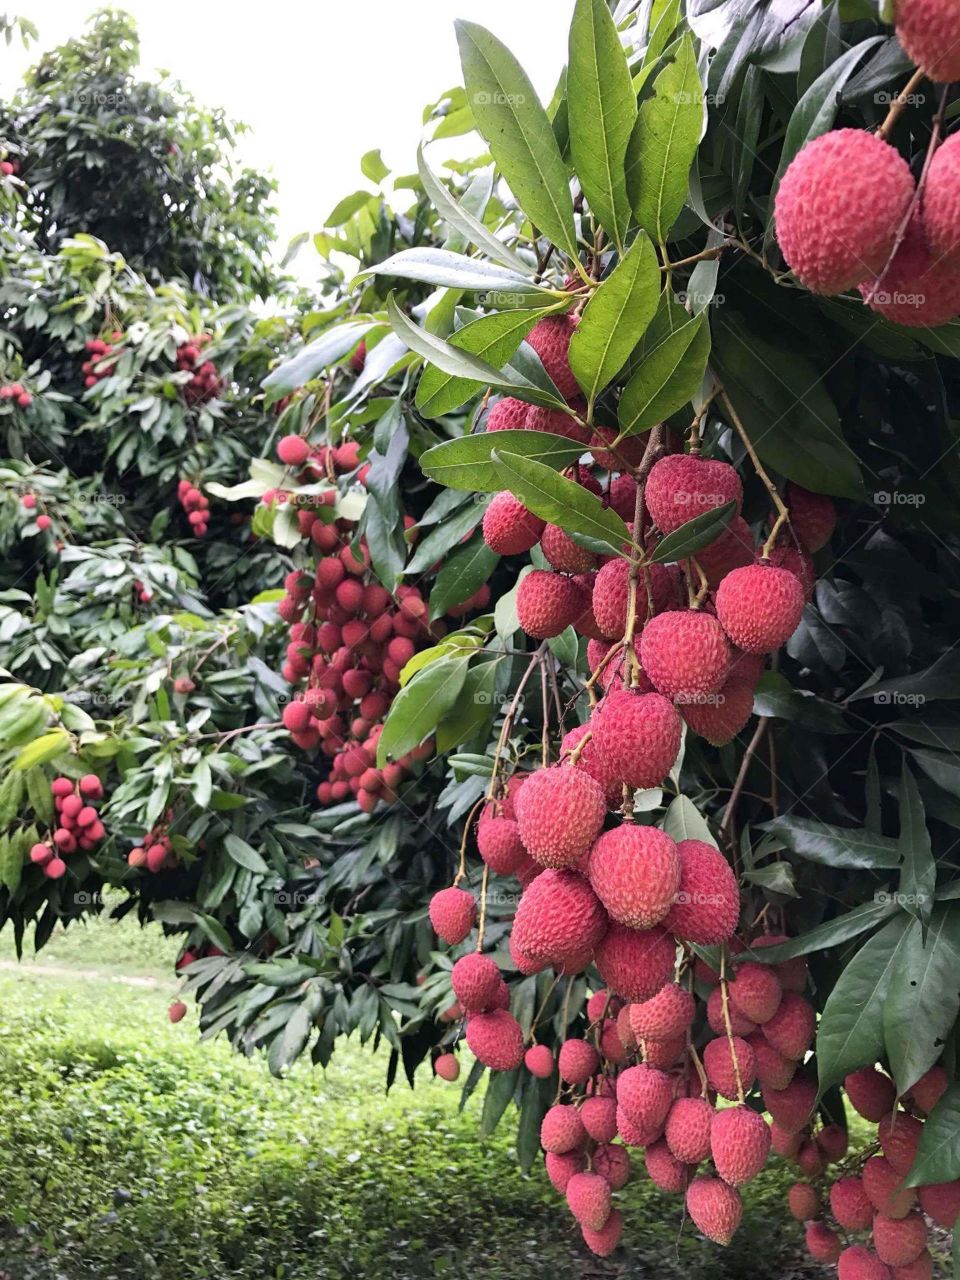 beauty of fruit